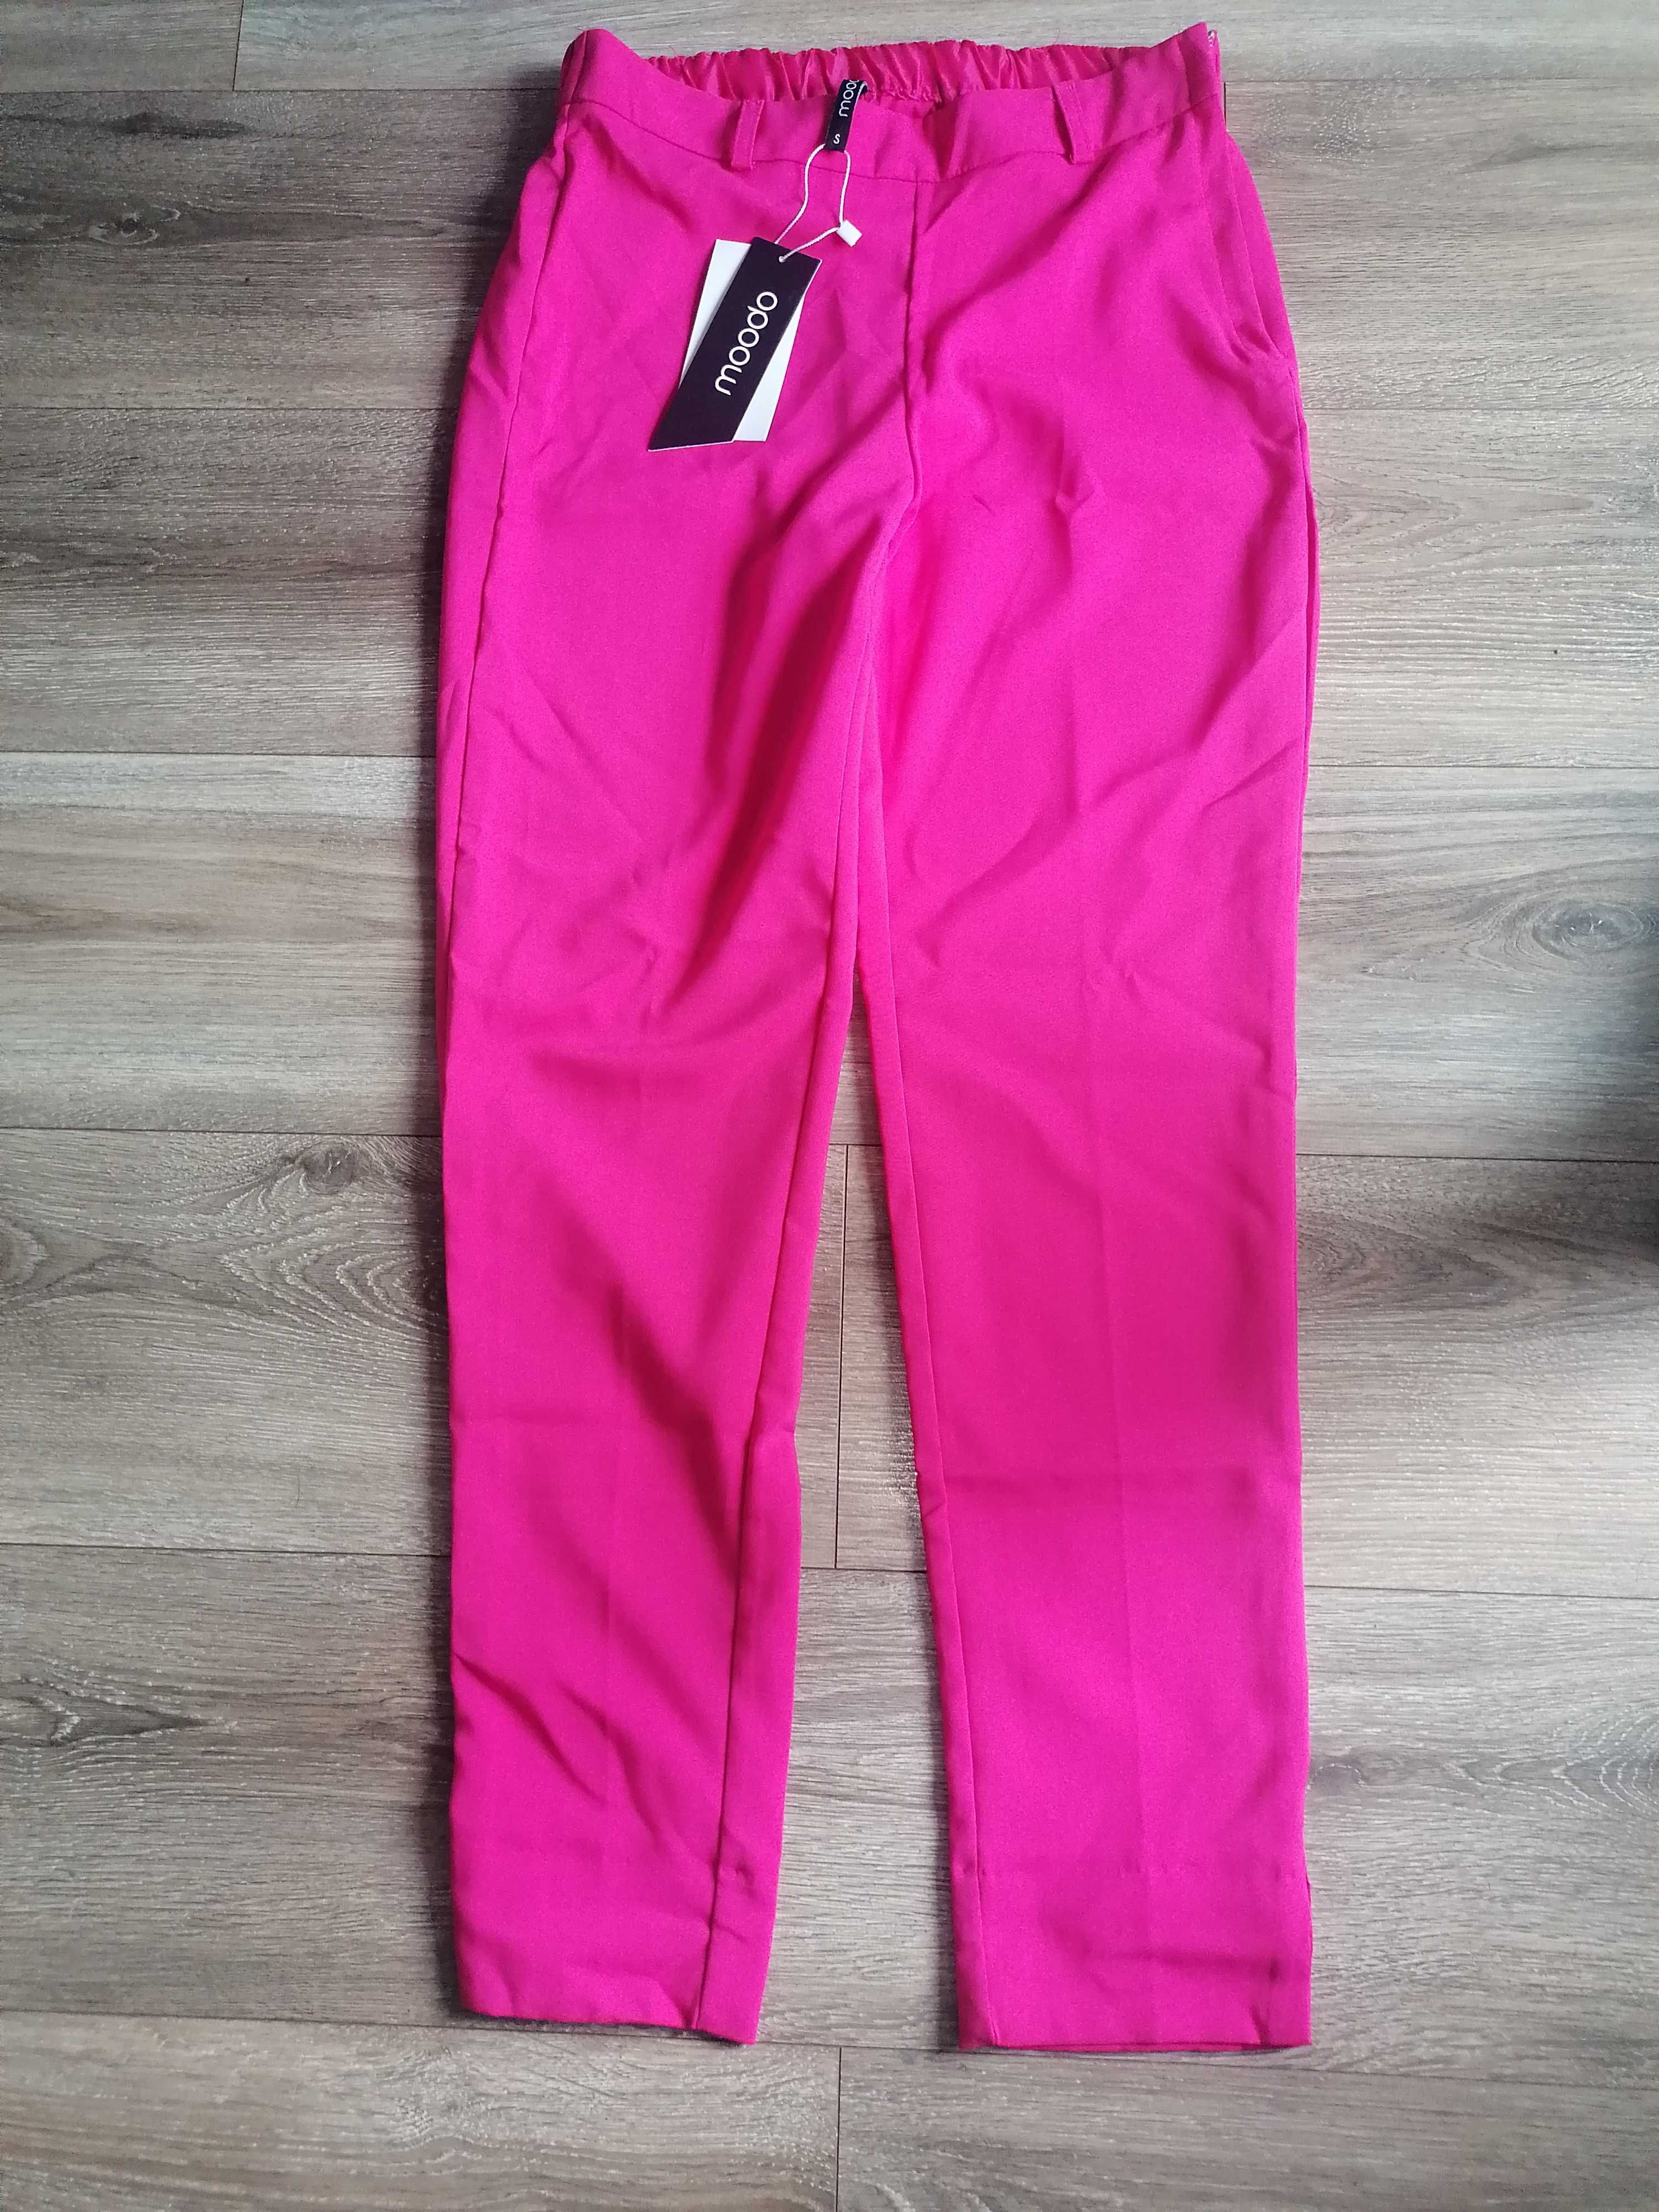 Spodnie damskie cygaretki różowe Modoo Nowe S/M